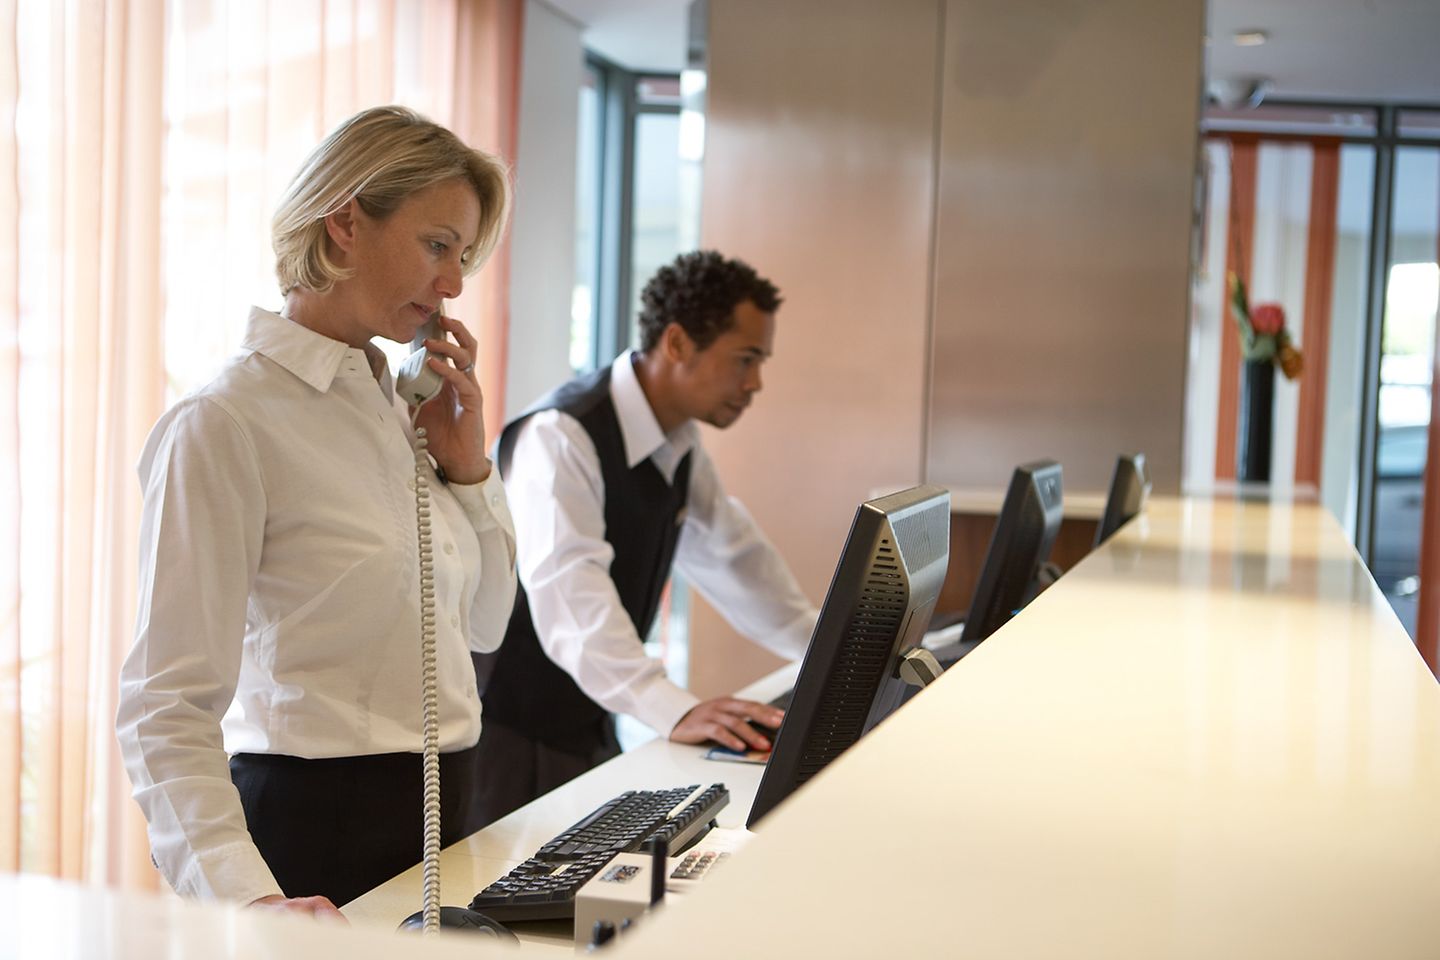 Una recepcionista habla por teléfono tras el mostrador de recepción de un hotel, mientras su compañero comprueba unos datos en